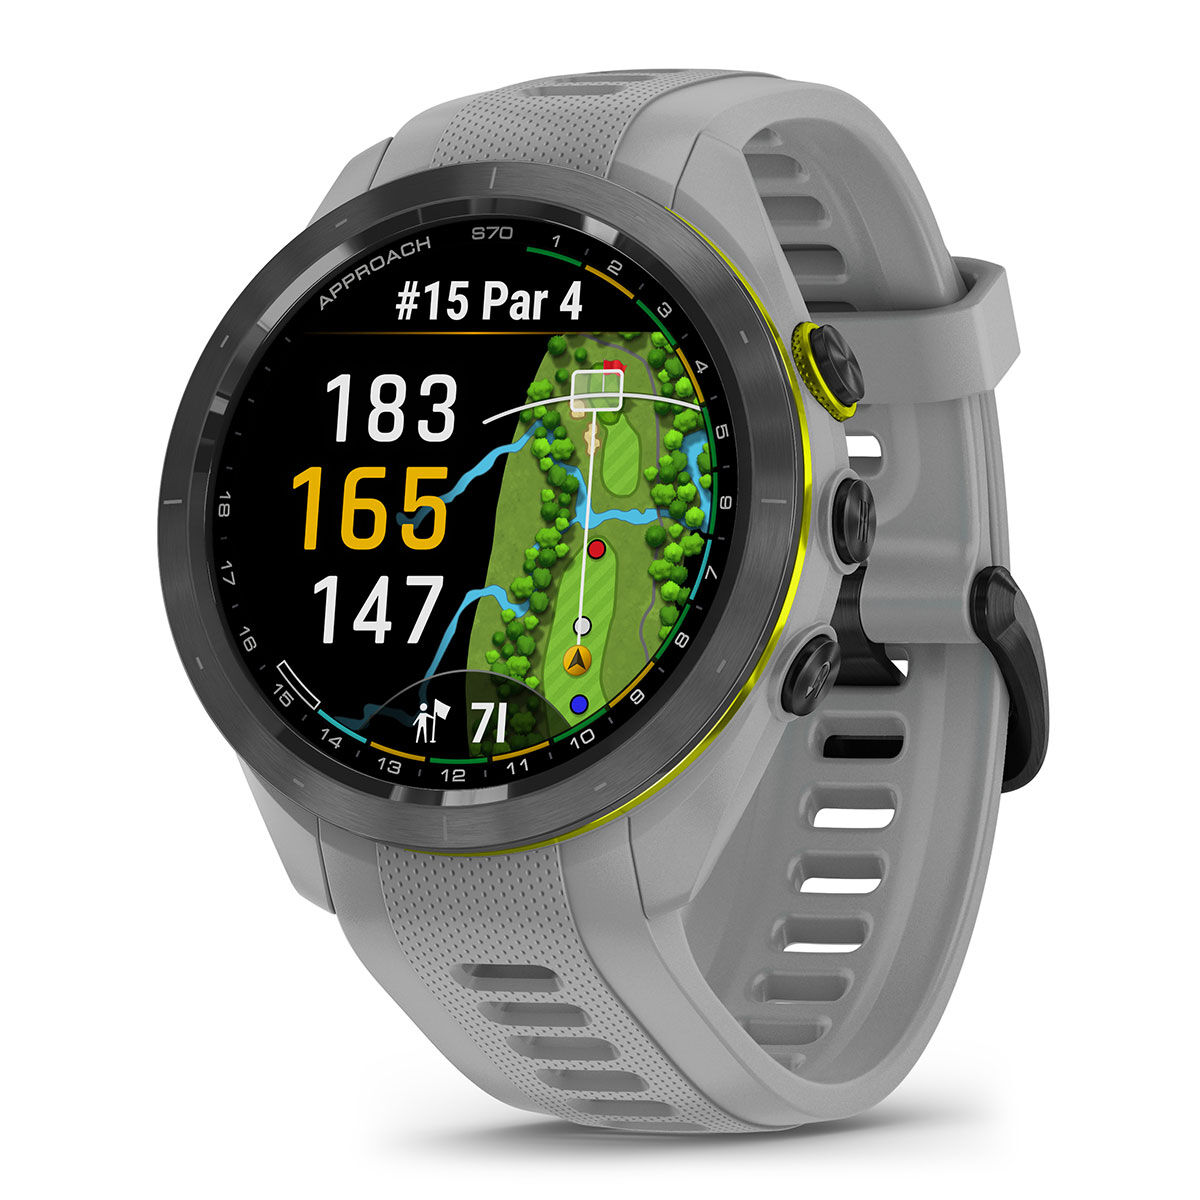 Garmin Golf GPS Watch, Approach S70 42mm, Grey | American Golf